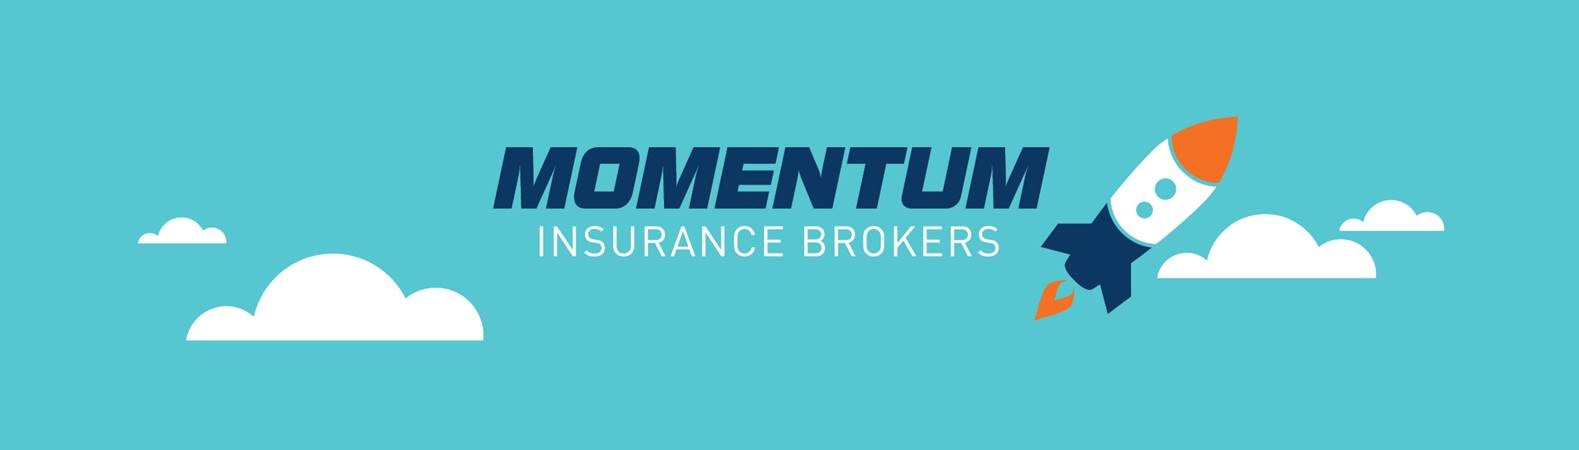 momentum insurance brokers